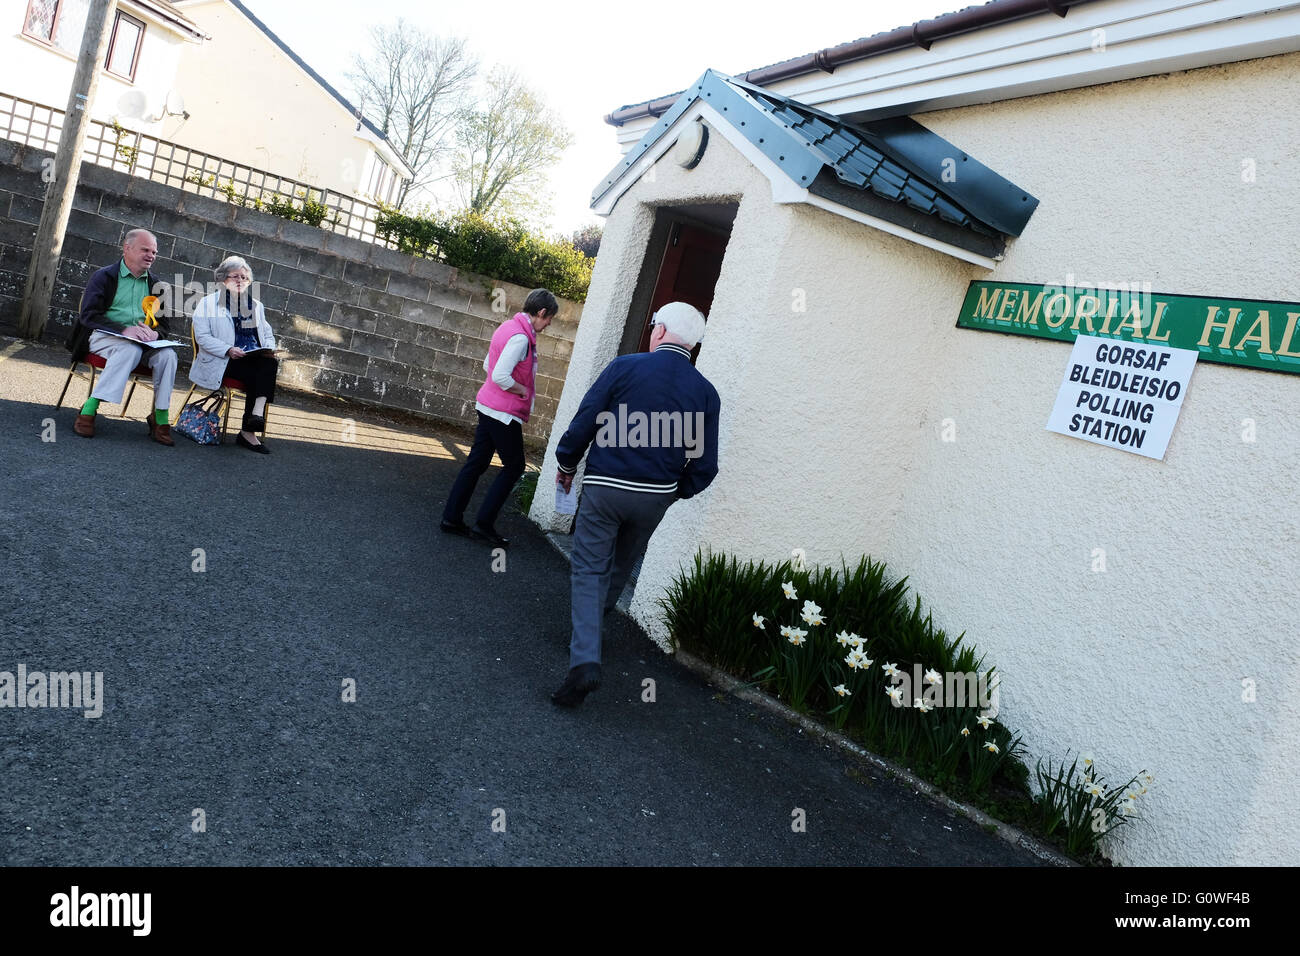 Presteigne, Powys, UK. 5. Mai 2016. Am frühen Morgen Wähler kommt im Wahllokal in der Dorfhalle in der Stadt von Presteigne, Powys - Wähler in Wales Stimmen Mitglieder für die Waliser Versammlung und auch die lokale Polizei und Kriminalität Kommissare zu wählen. Stockfoto